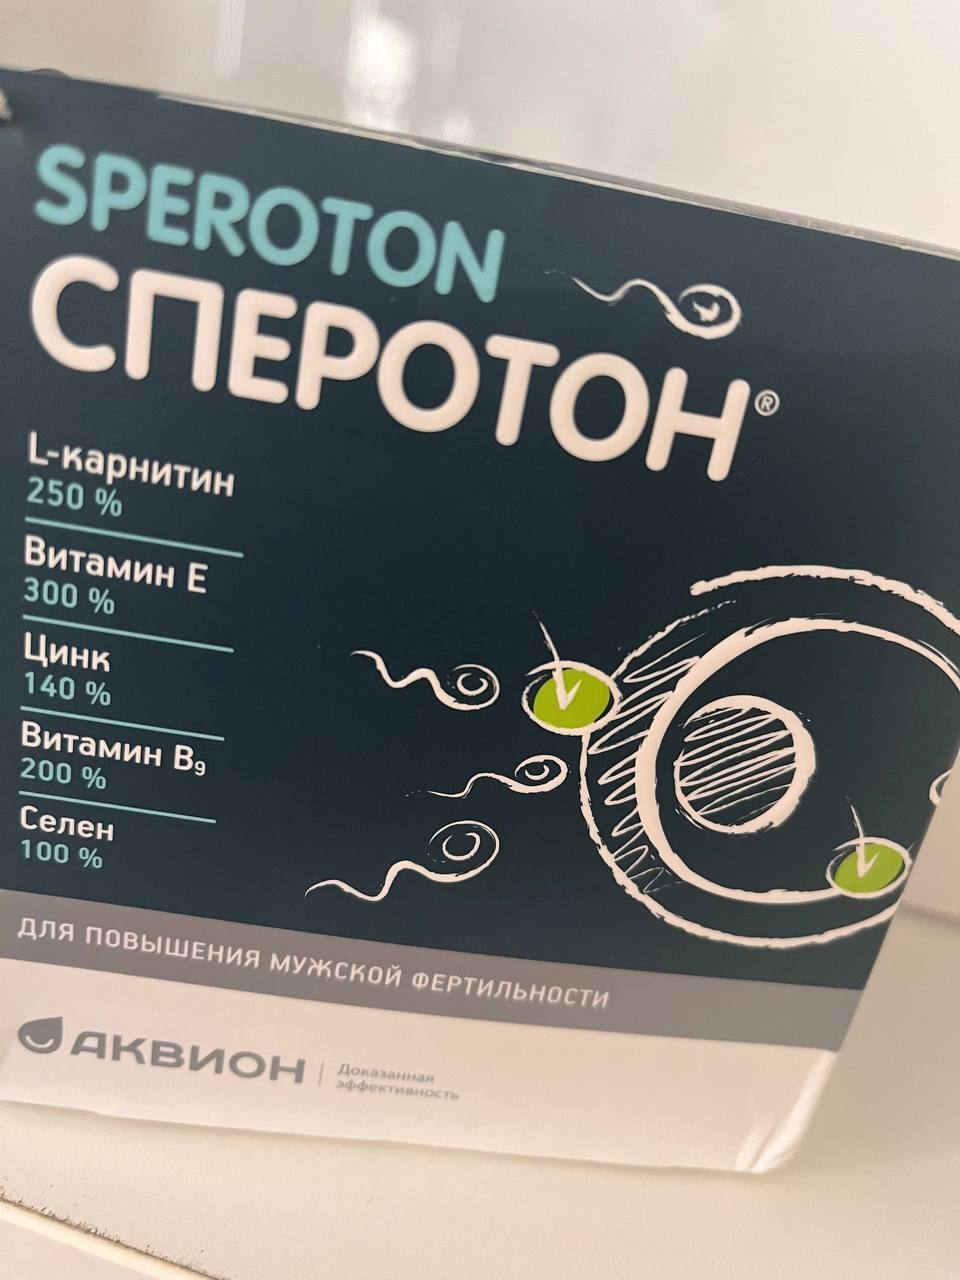 Сперотон. Сперотон для женщин. Сперотон капсулы. Сперотон порошок для мужчин и женщин. Сперотон отзывы мужчин